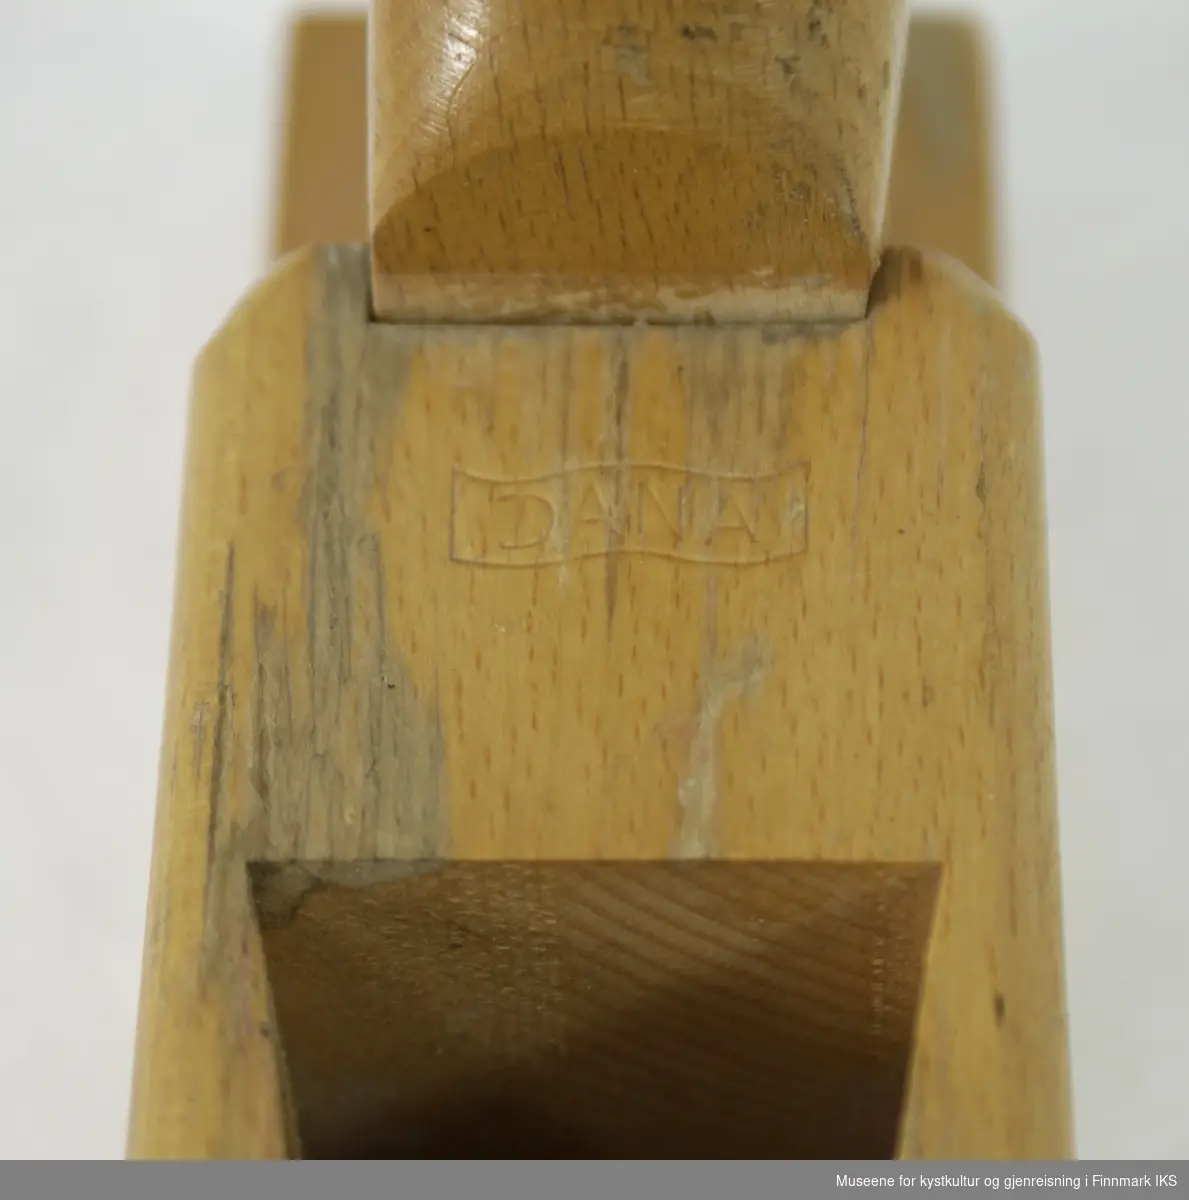 Pusshøvelen i tre har en rektangulær såle med en 4,6 cm bred 8 mm lang sponåpning. Skjærebladet og sponbryteren er i stål og kan justeres til hverandre med en skrue. Skjæreanordning justeres i kilegang med en trekil. Både, skjæreblad og sponbryter har påskriften "Kongsberg Norway 1 3/4" " og en symbol over den som viser en stor K med krone på.  Jernet danner en vinkel på 45 grader til såla. Mellom sponrom og høvelnesa er det preget inn ordet "DANA". På øvrekanten av høvelnesa er det et avbrudd. Høvelnesa sitter løst. På baksiden av høvelhuset befinner det seg et svart slagknapp og over den er det innpreget en 45 med slagstempler. Tallet angir skjærebladets bredde og tilsvarer de 1 3/4" som er angitt på skjæreanordningen.